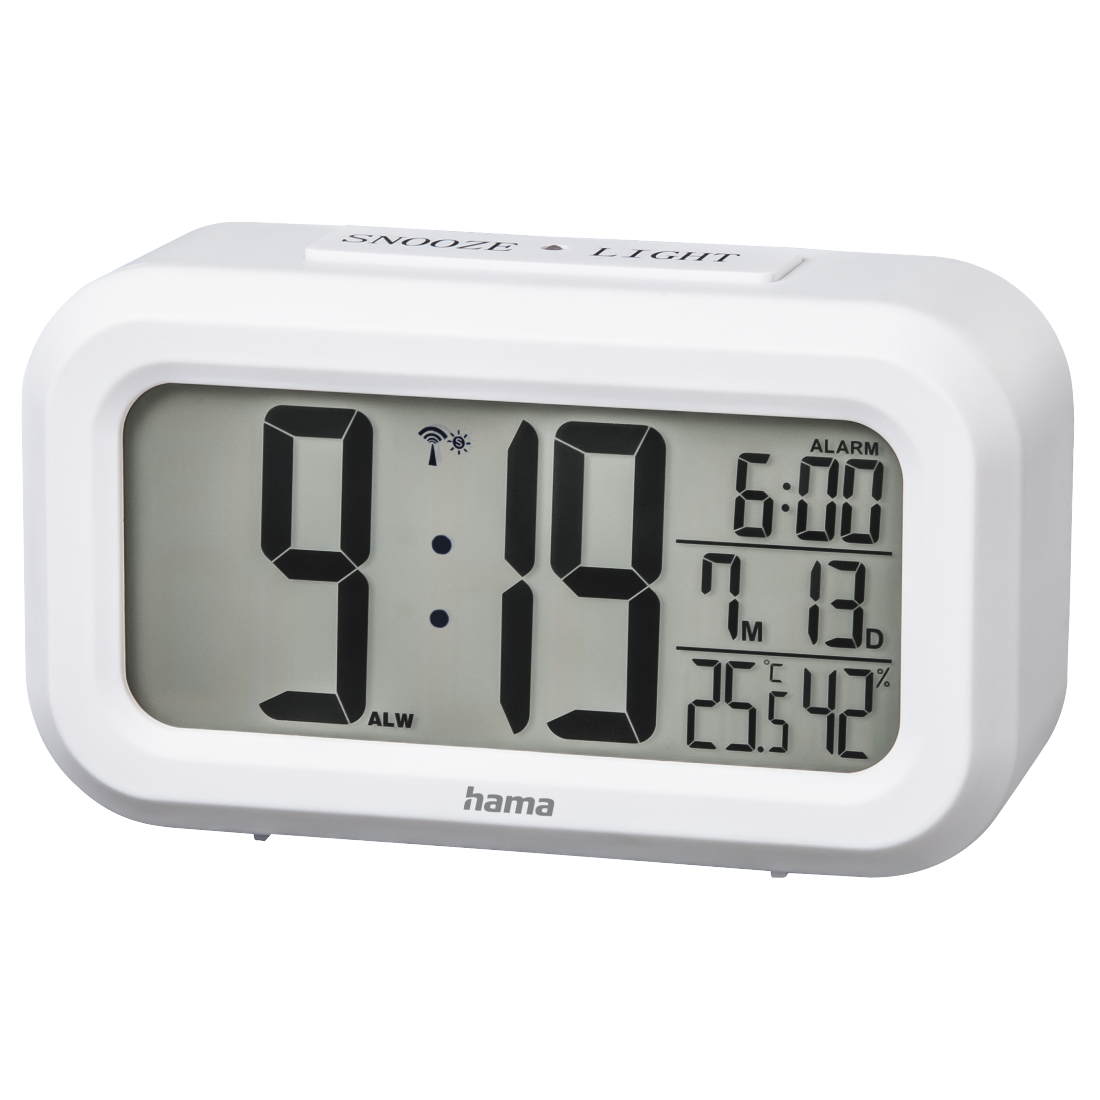 Hama Alarm Clock Uhr Braun OVP Wecker 